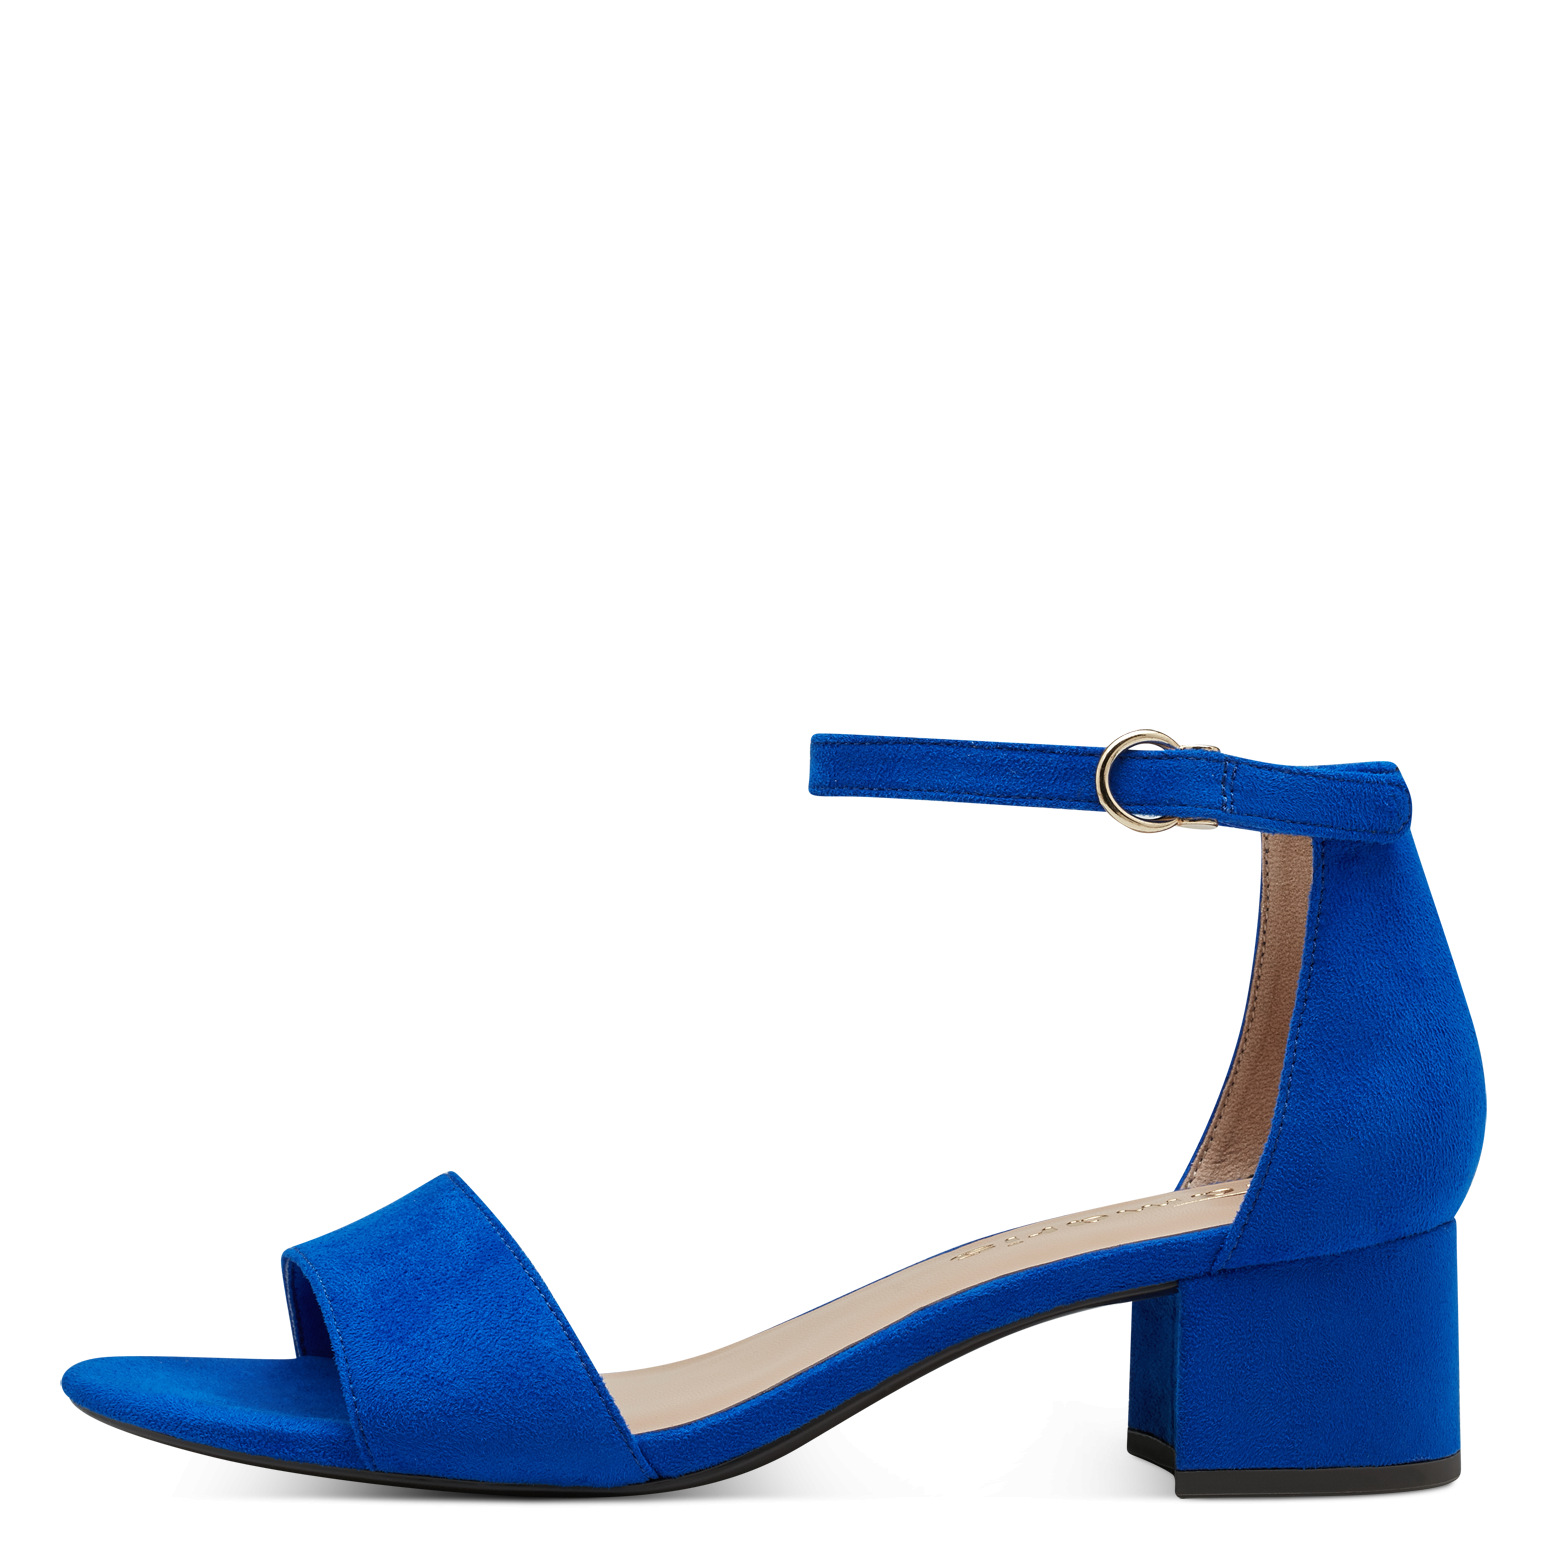 Assassin domæne tornado Tamaris 1-1-28201-187 Royal Blue. Super flot royal blå dame sandal, enkel  og elegant på lille hæl. - Nyegaardsko.dk